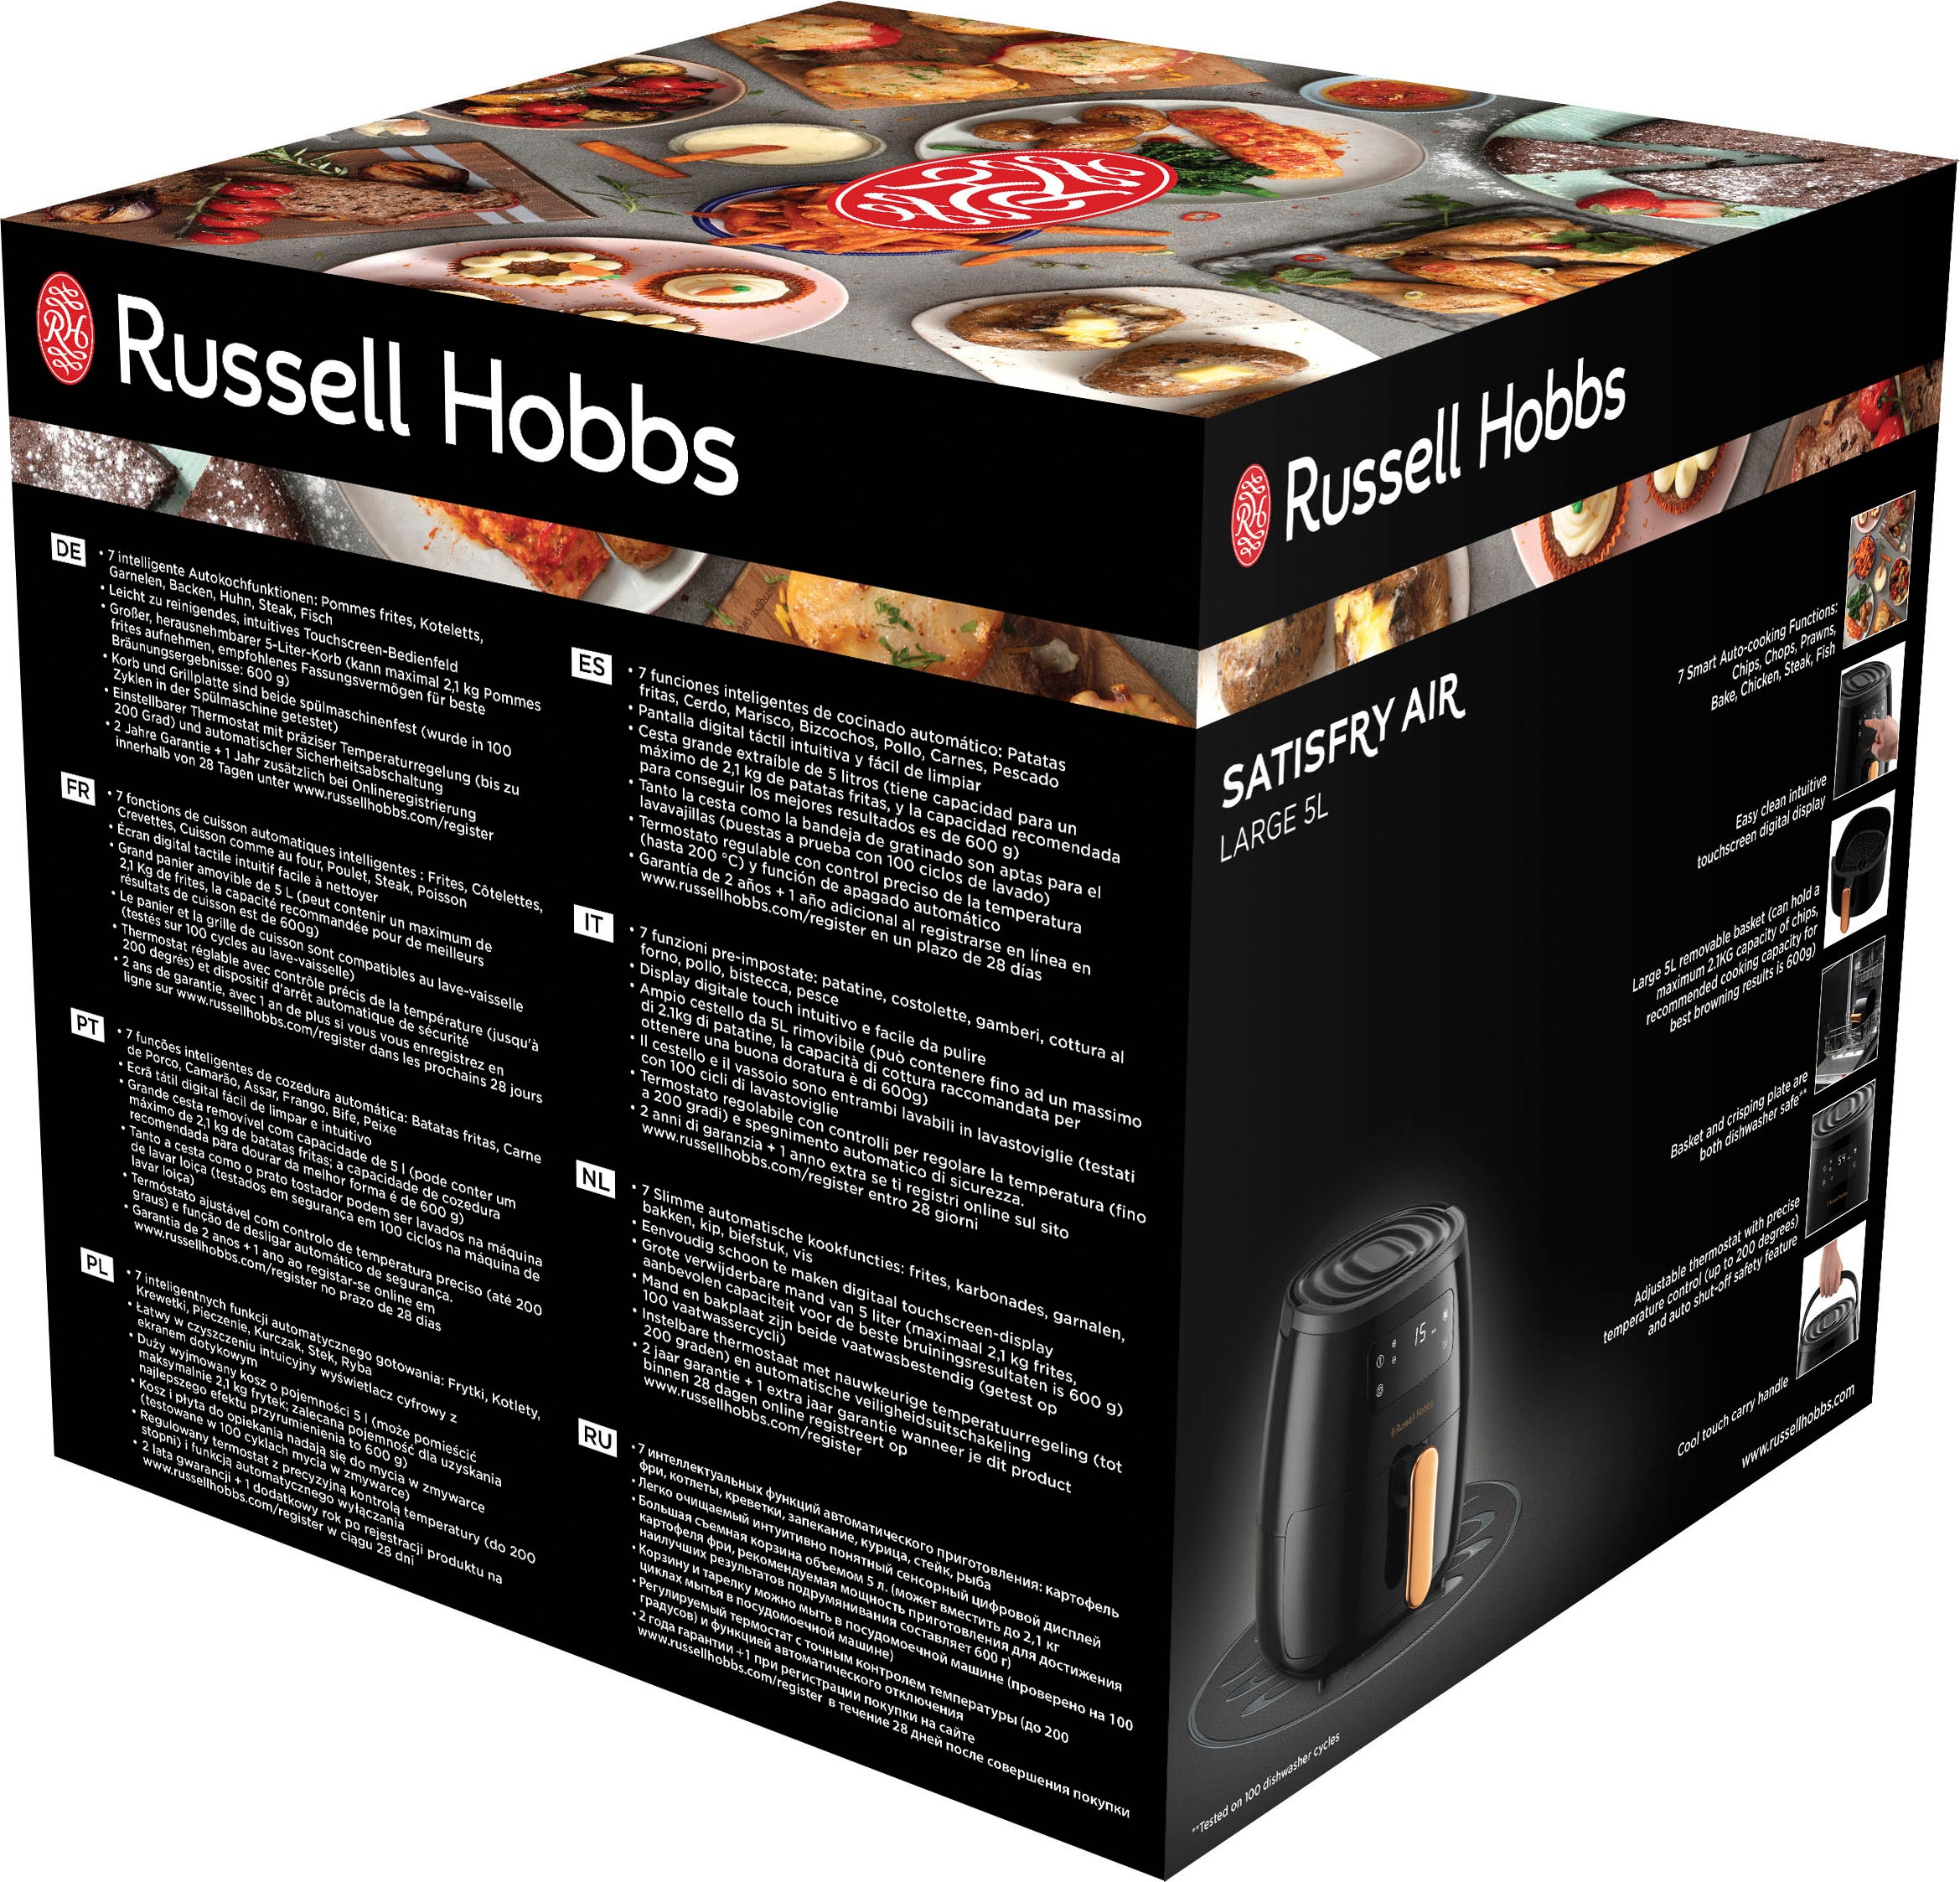 RUSSELL HOBBS Heißluftfritteuse »SatisFry Air 26510-56«, 1650 W,  Fassungsvermögen 5 l, groß - 5 l online kaufen